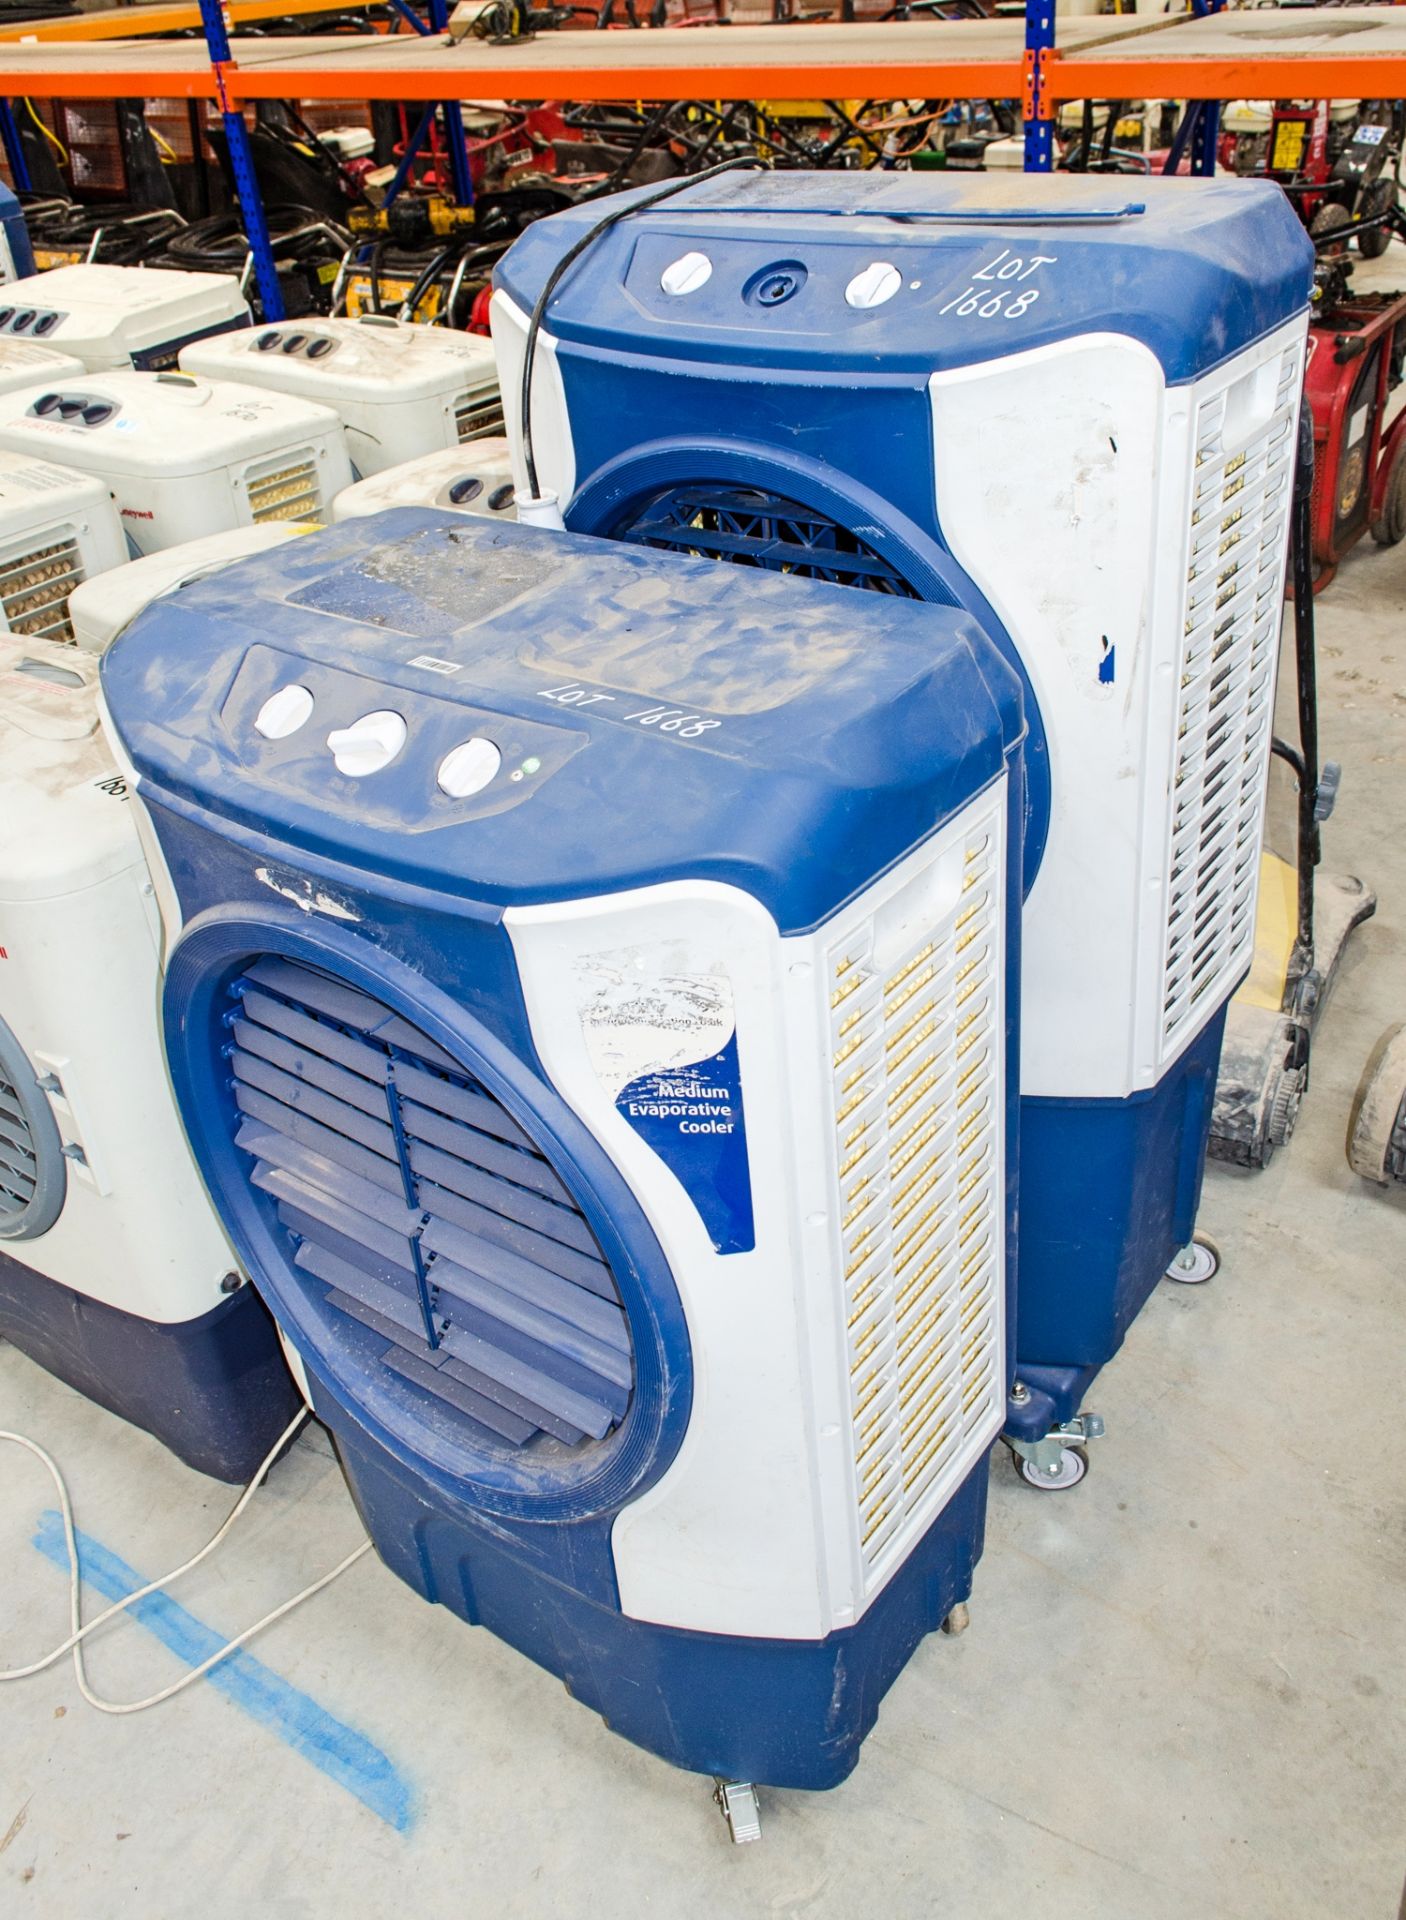 2 - 240v evaporative coolers